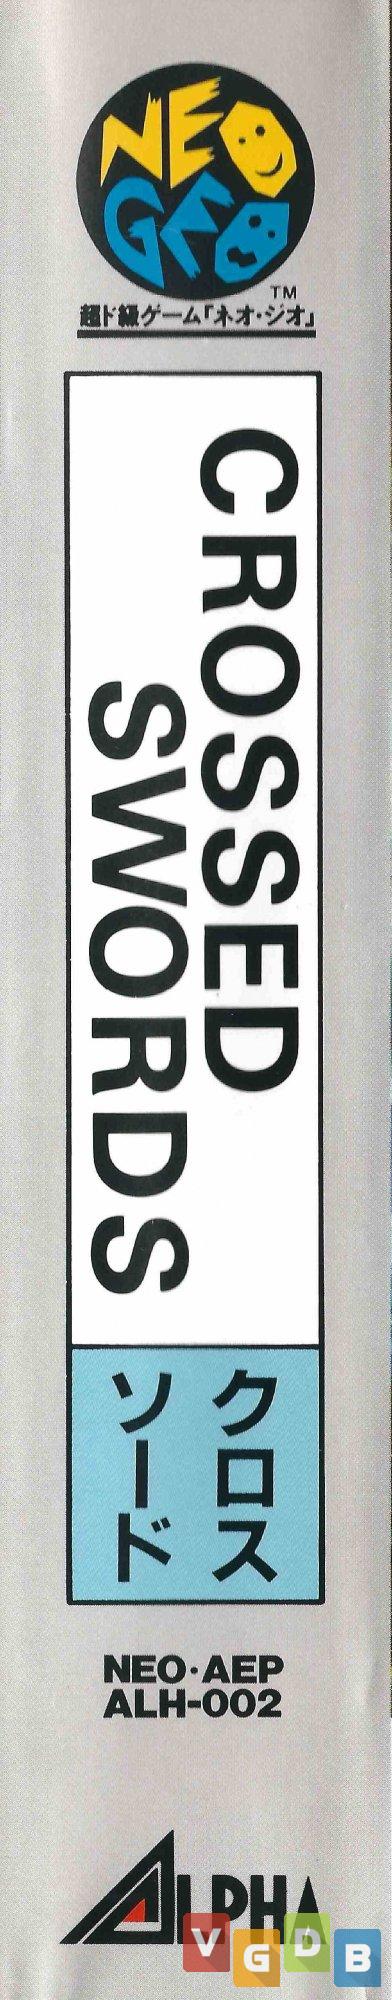 Crossed Swords - VGDB - Vídeo Game Data Base